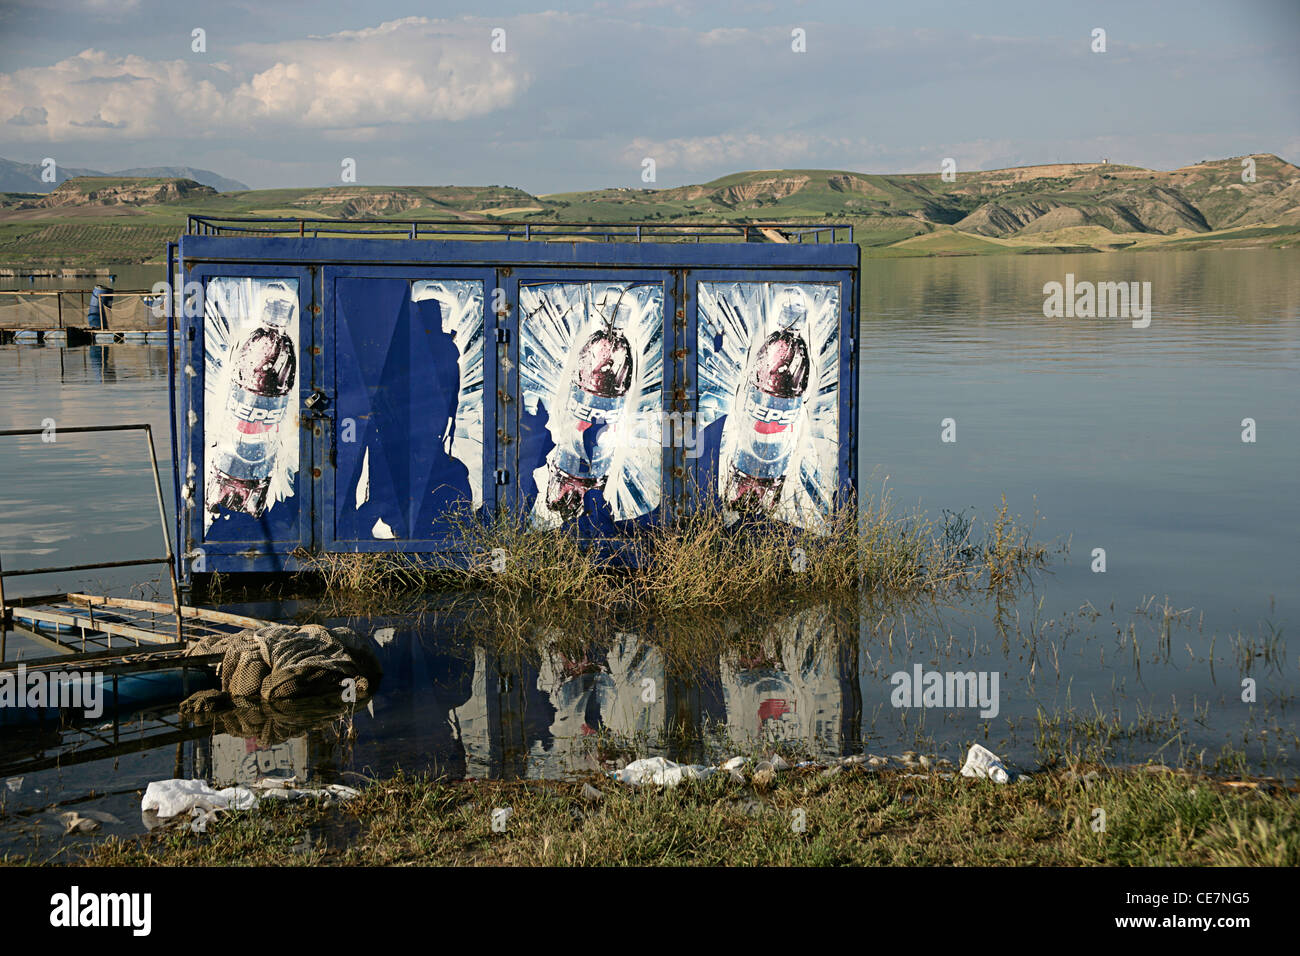 Pepsi-Container auf spät Atatürk in der Nähe von Schlafwagen, Südosten der Türkei Stockfoto